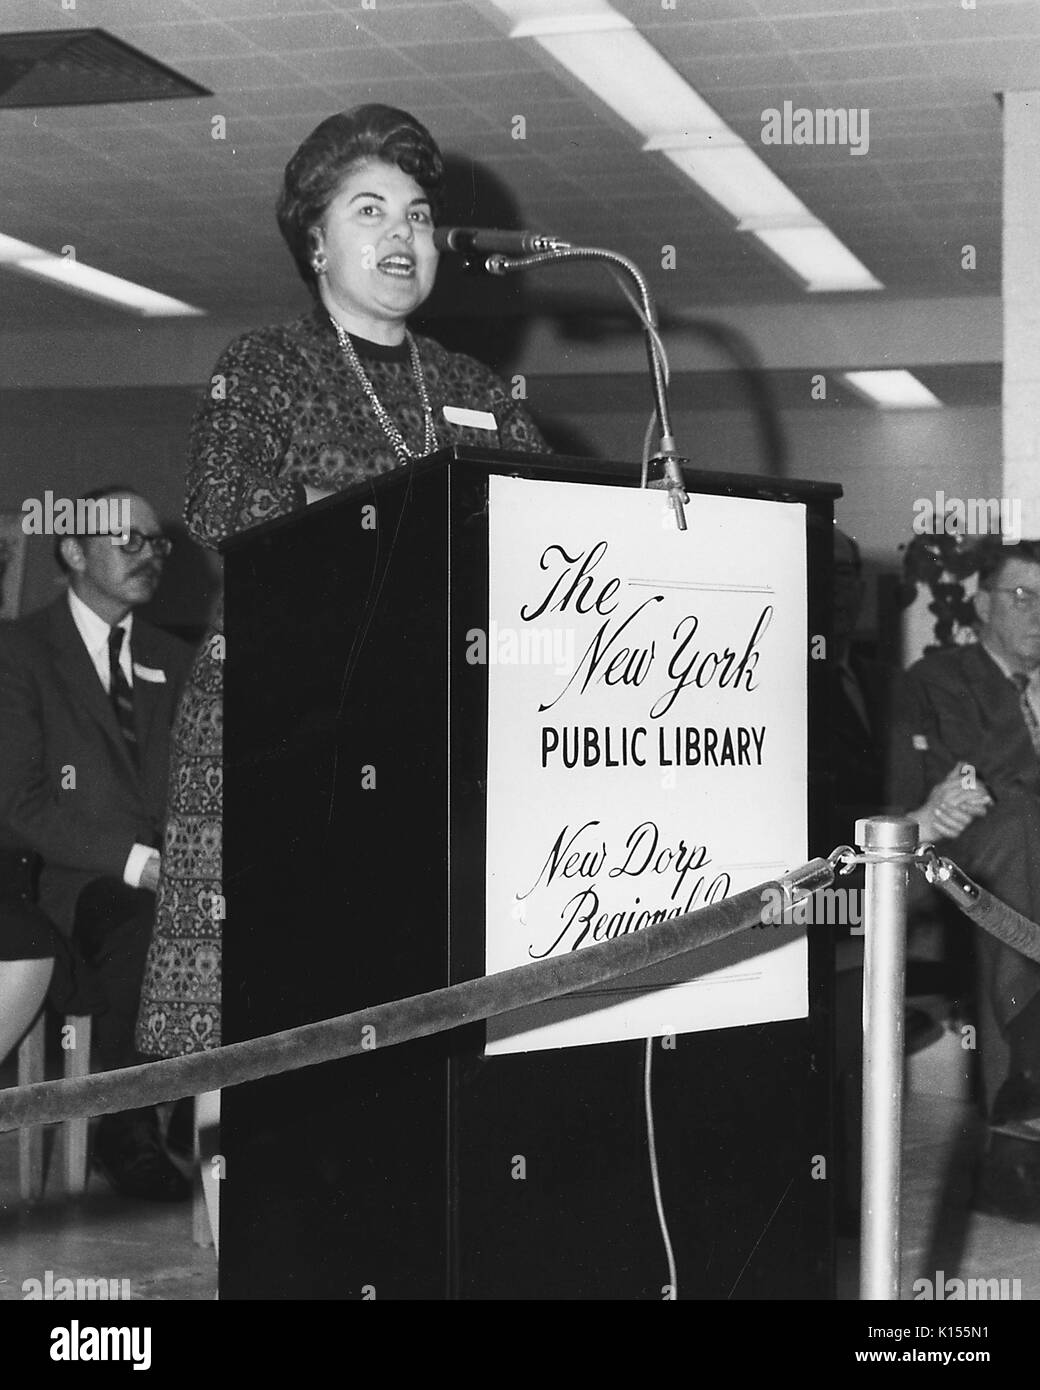 Eleanor Ayoub, bibliothécaire de la Direction générale de New Dorp Direction régionale de la Bibliothèque publique de New York, lors d'un podium au cours de l'ouverture, l'événement 1972. À partir de la Bibliothèque publique de New York. Banque D'Images